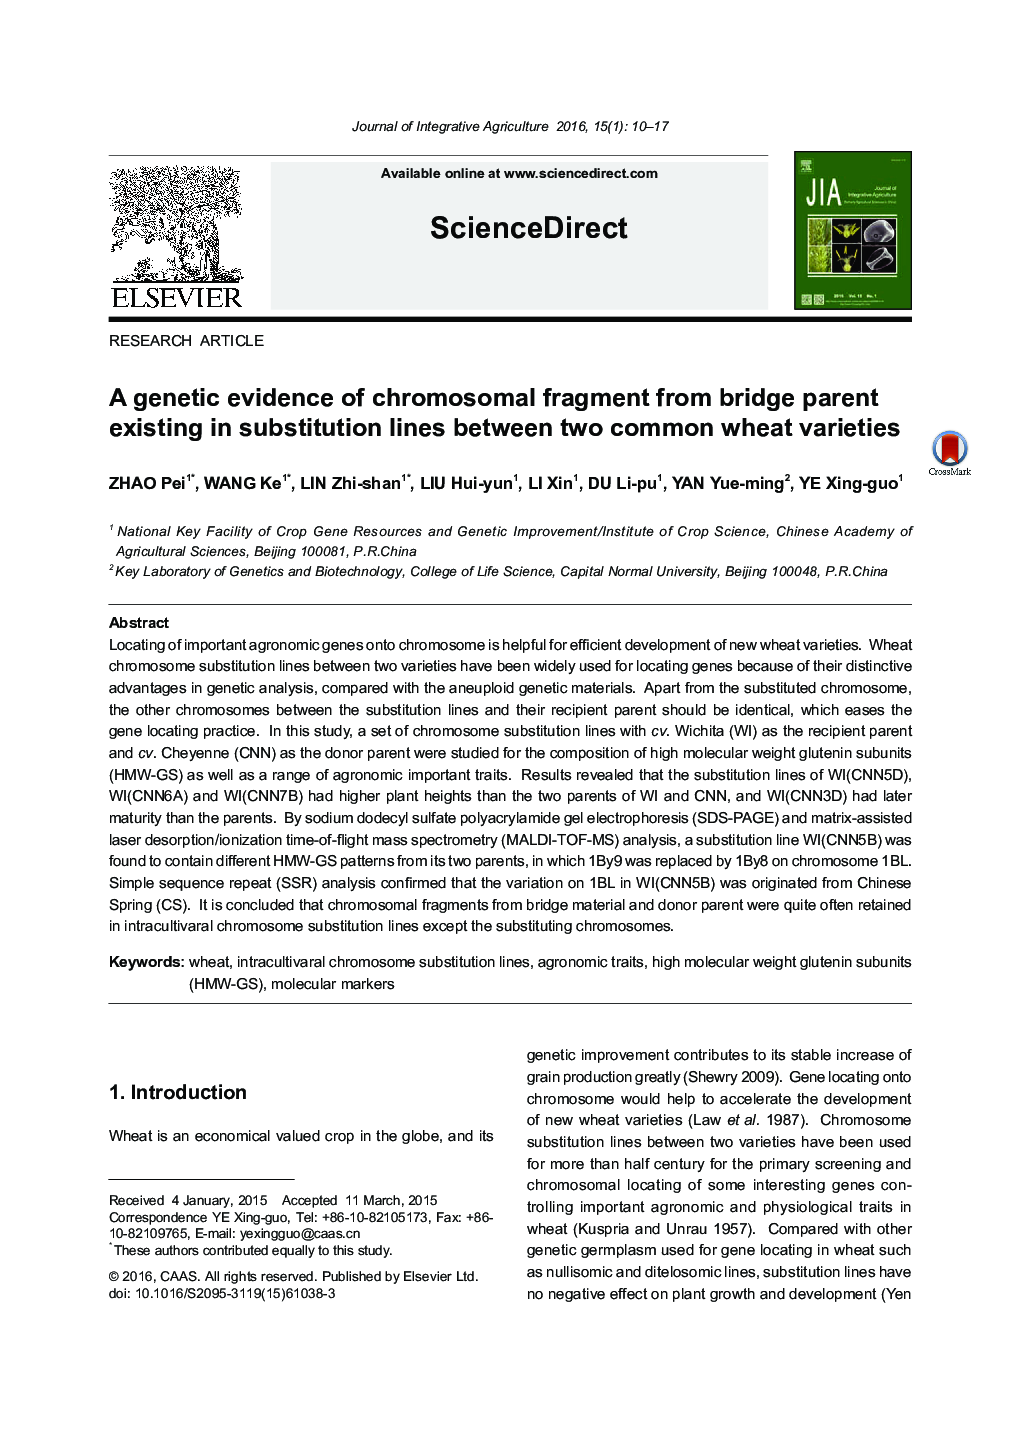 شواهد ژنتیکی از قطعه کروموزومی از والدین پل موجود در خط های جایگزینی بین دو نوع گندم معمولی 